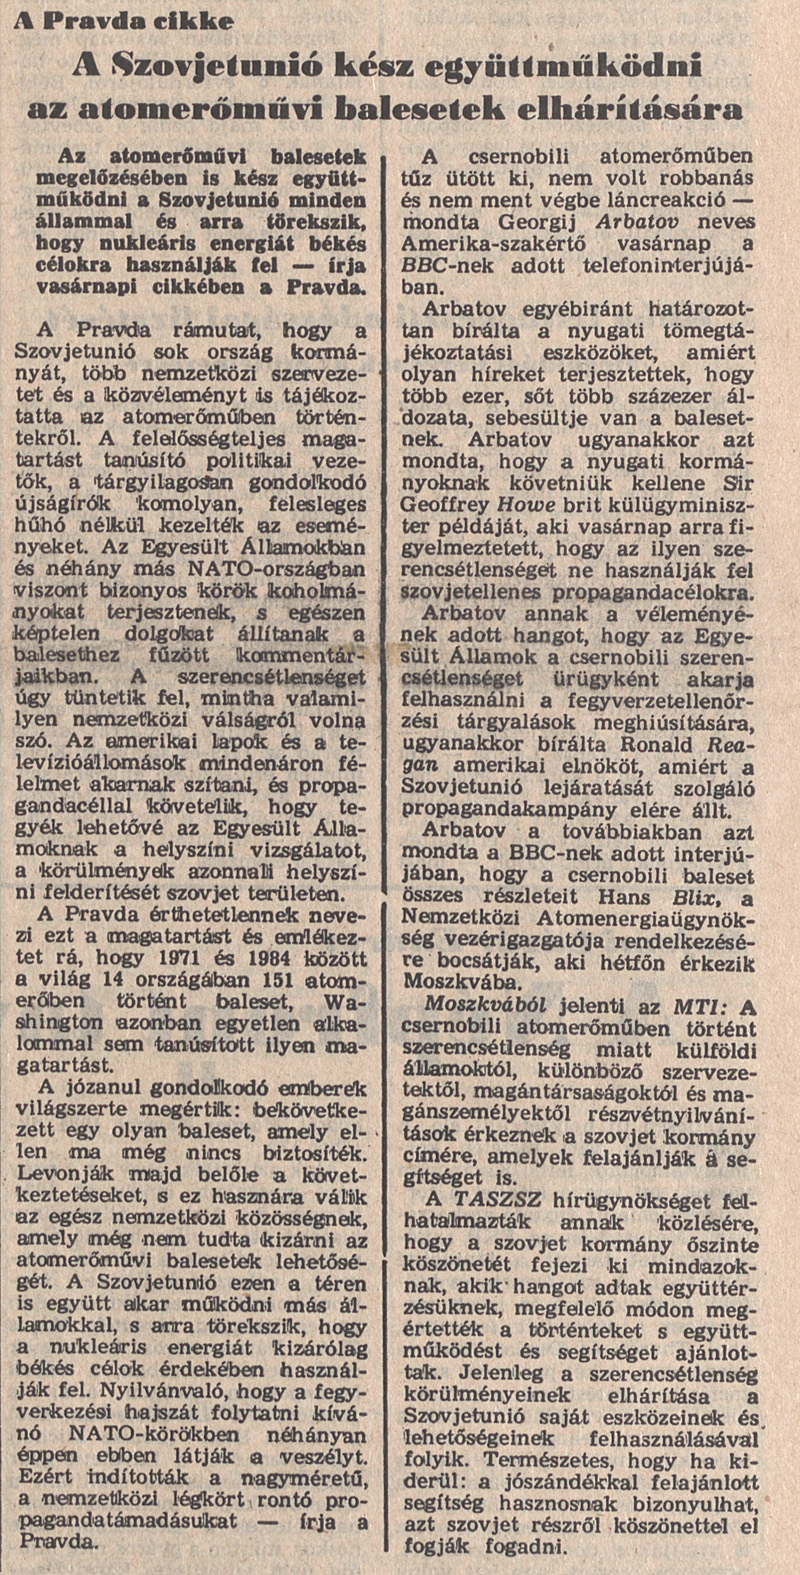 Magyar Nemzet 1986. május 5. Címlap. OSZK Törzsgyűjtemény